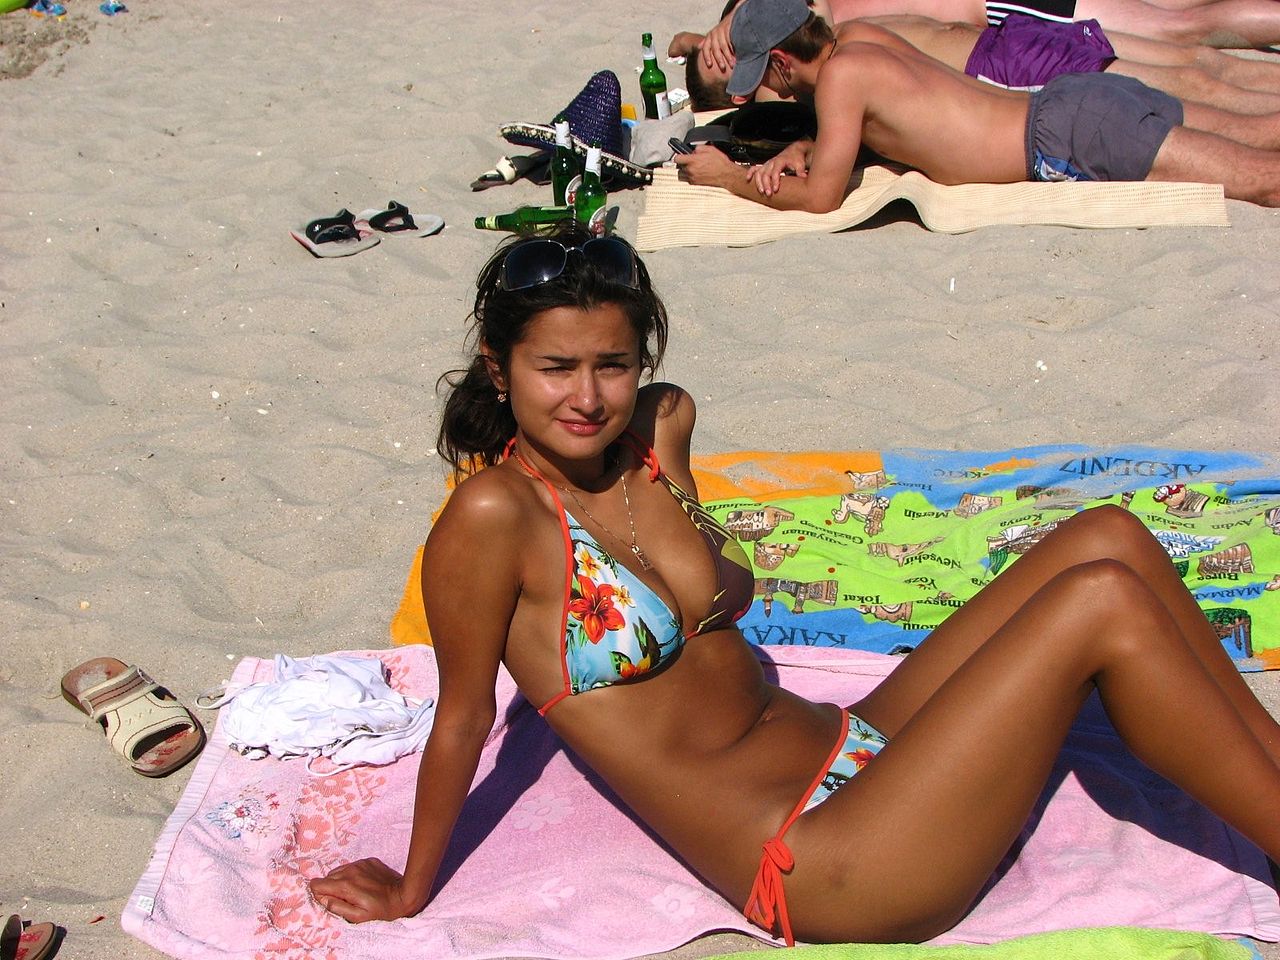 File:Young women bikini.jpg - Wikipedia